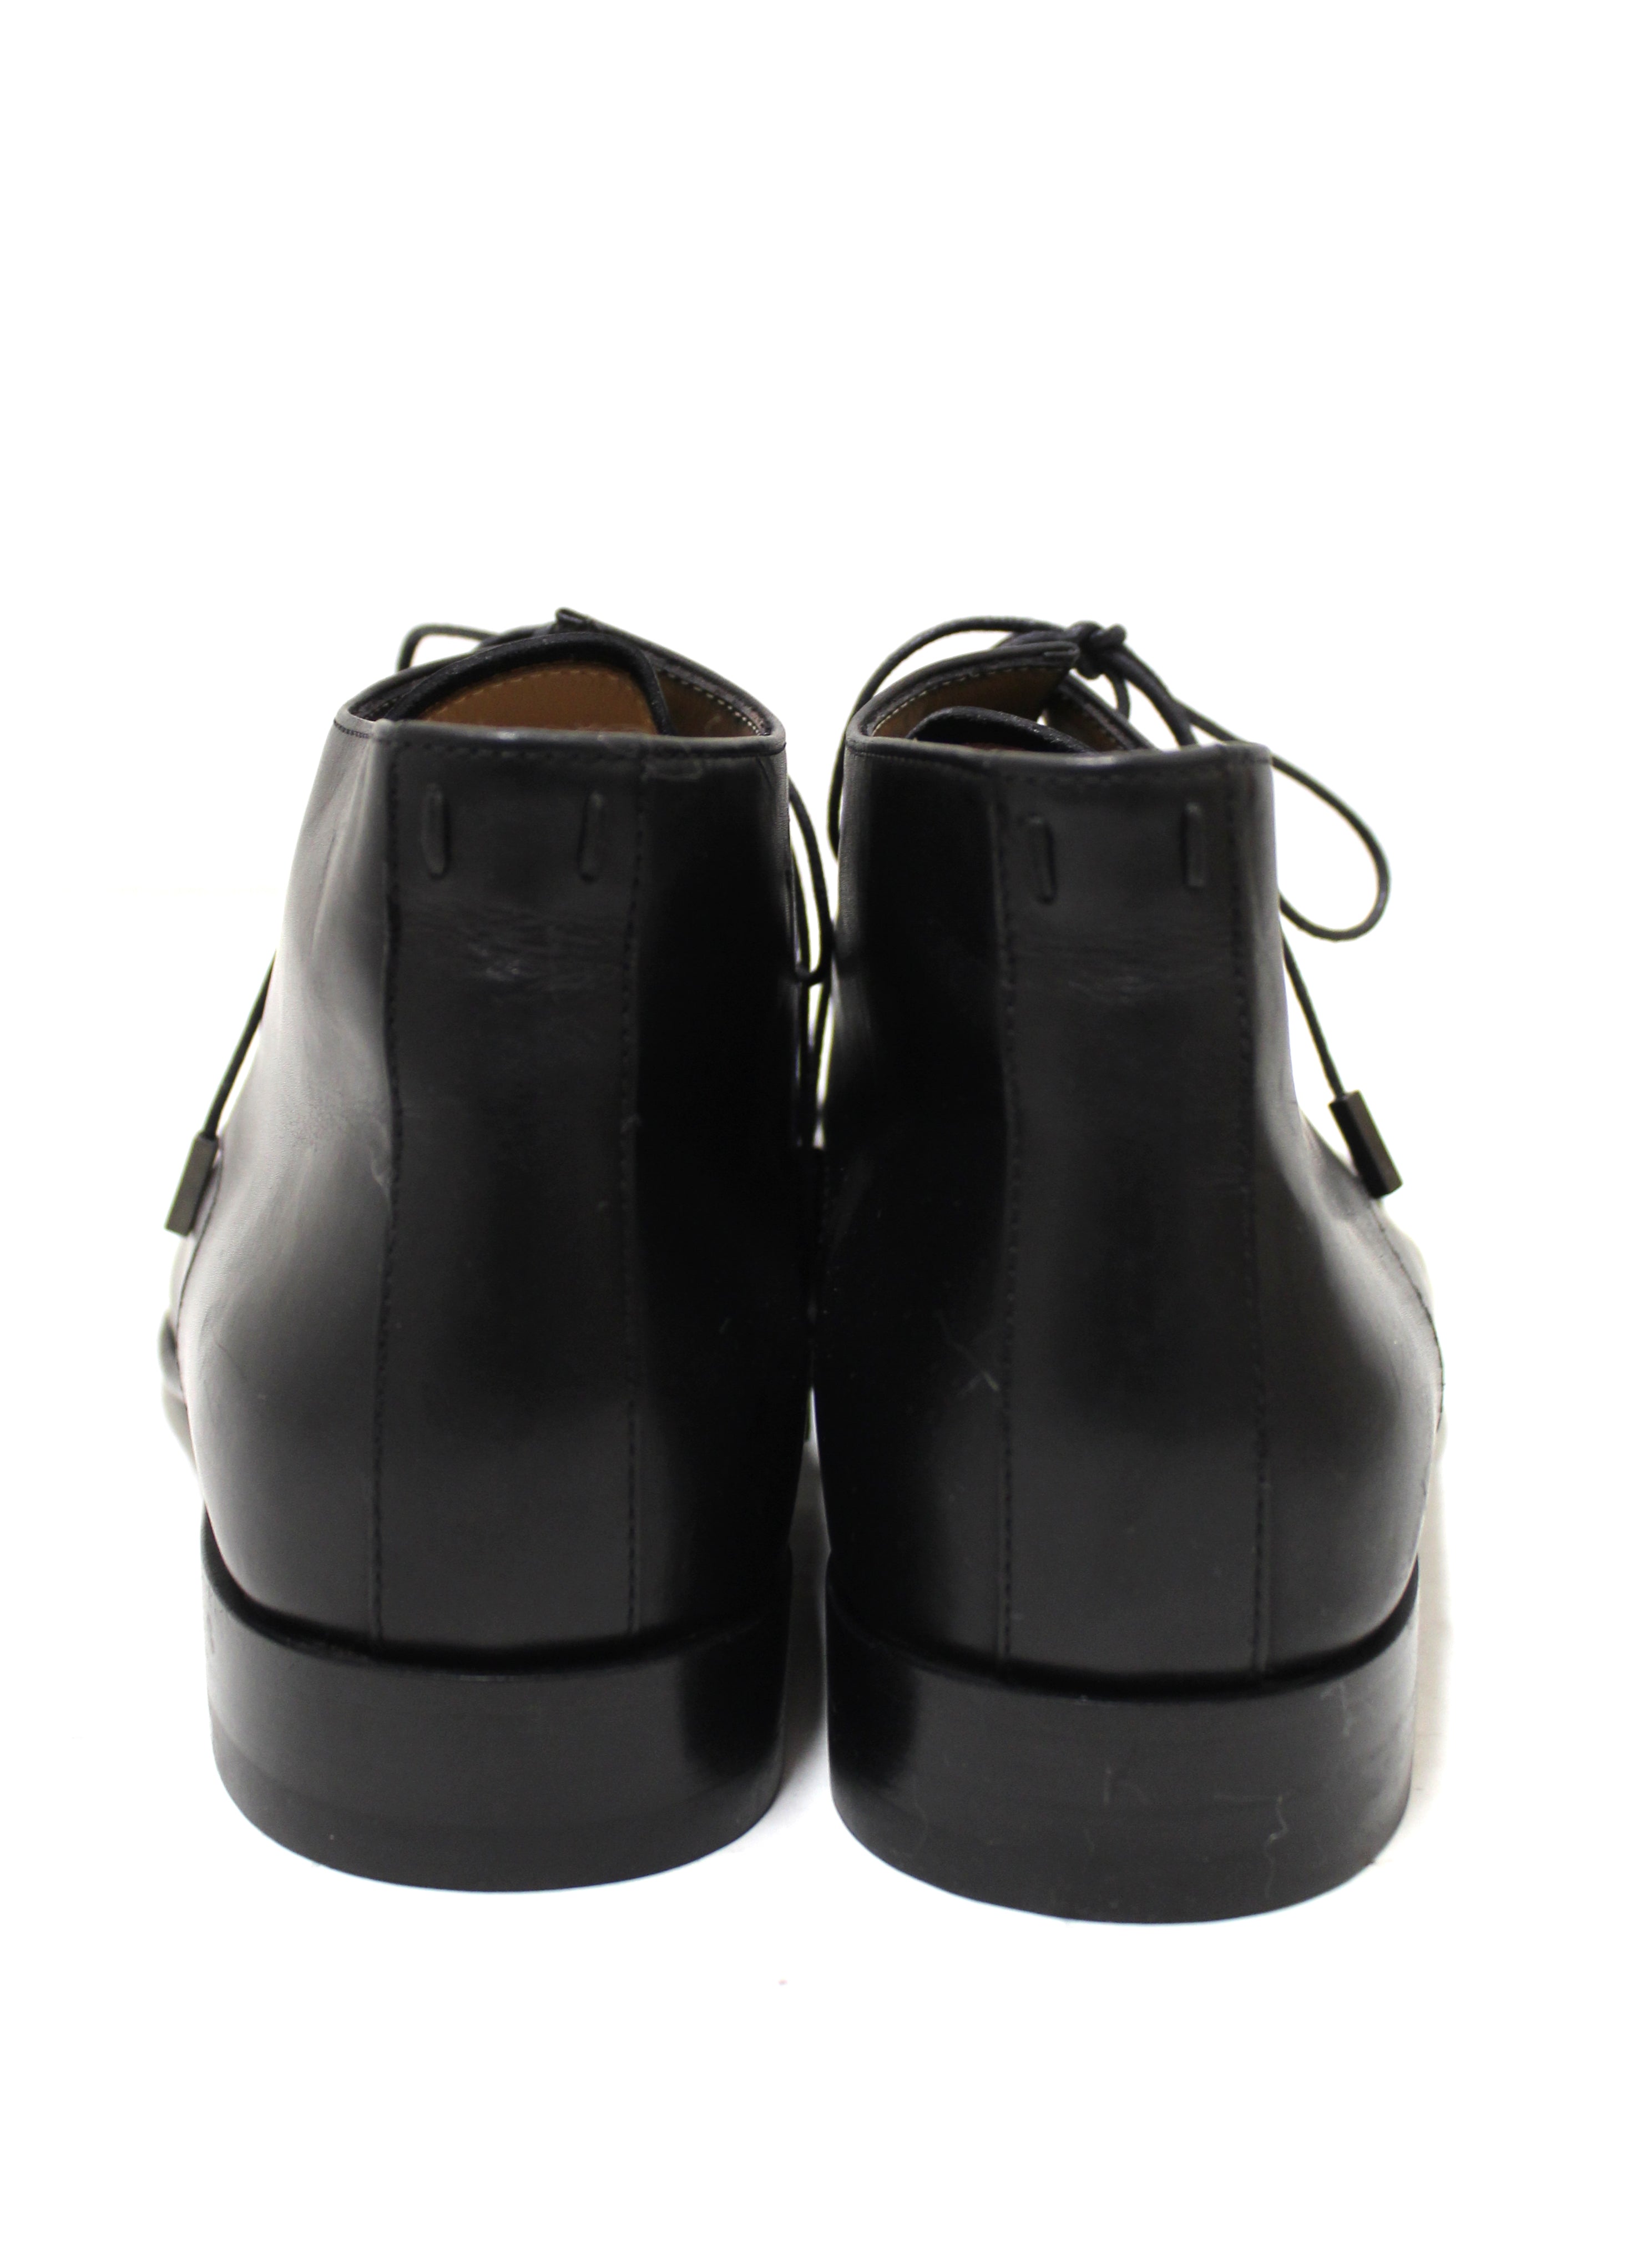 Authentic Louis Vuitton Men's Black Calf Leather Lace Dress Shoes Boots UK size 6 (US 7)